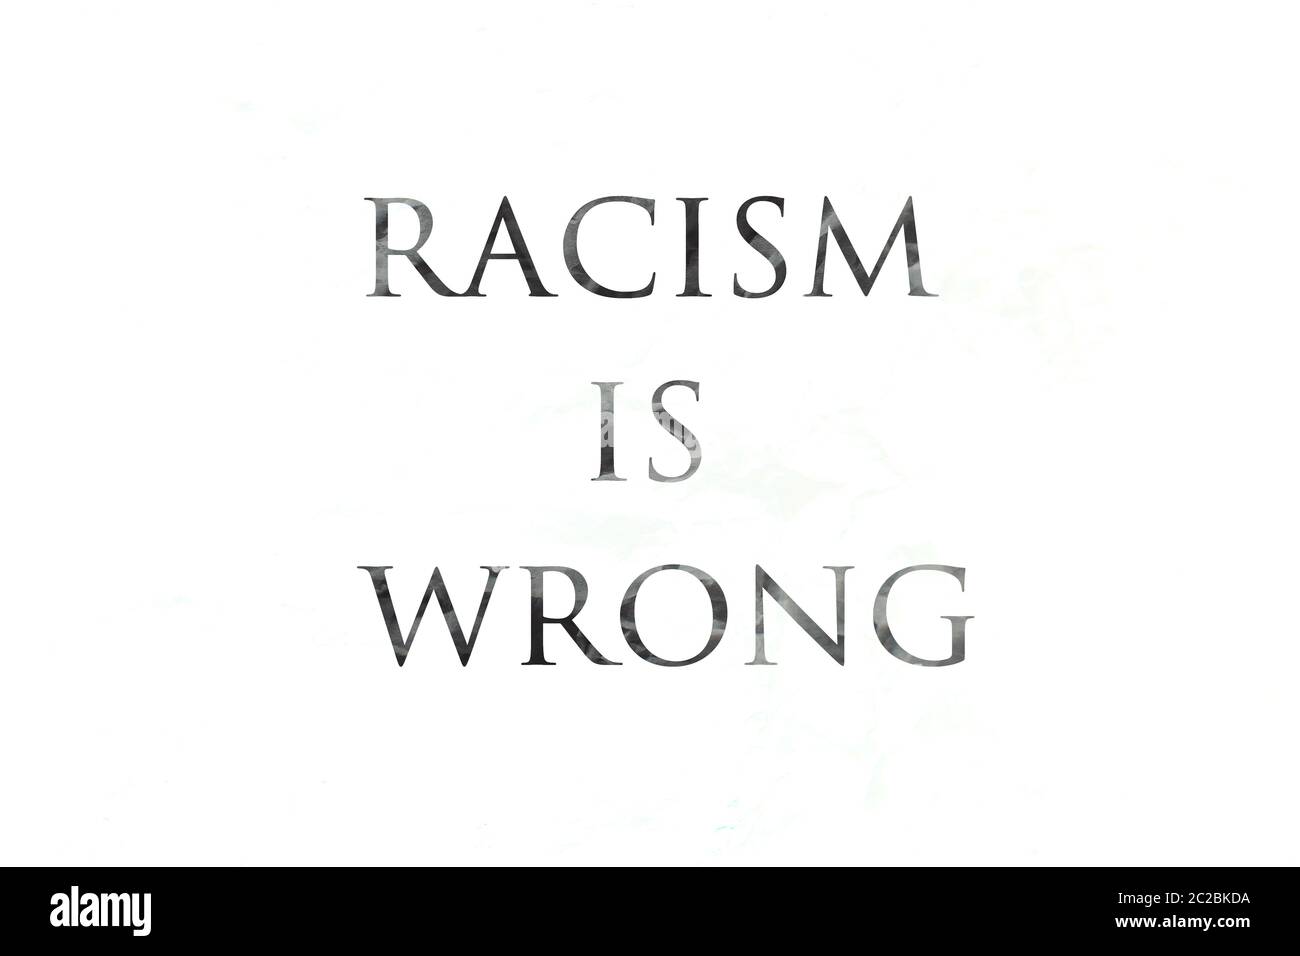 Fermare il razzismo. Poster con frase Racism è sbagliato, banner su sfondo nero. Foto Stock